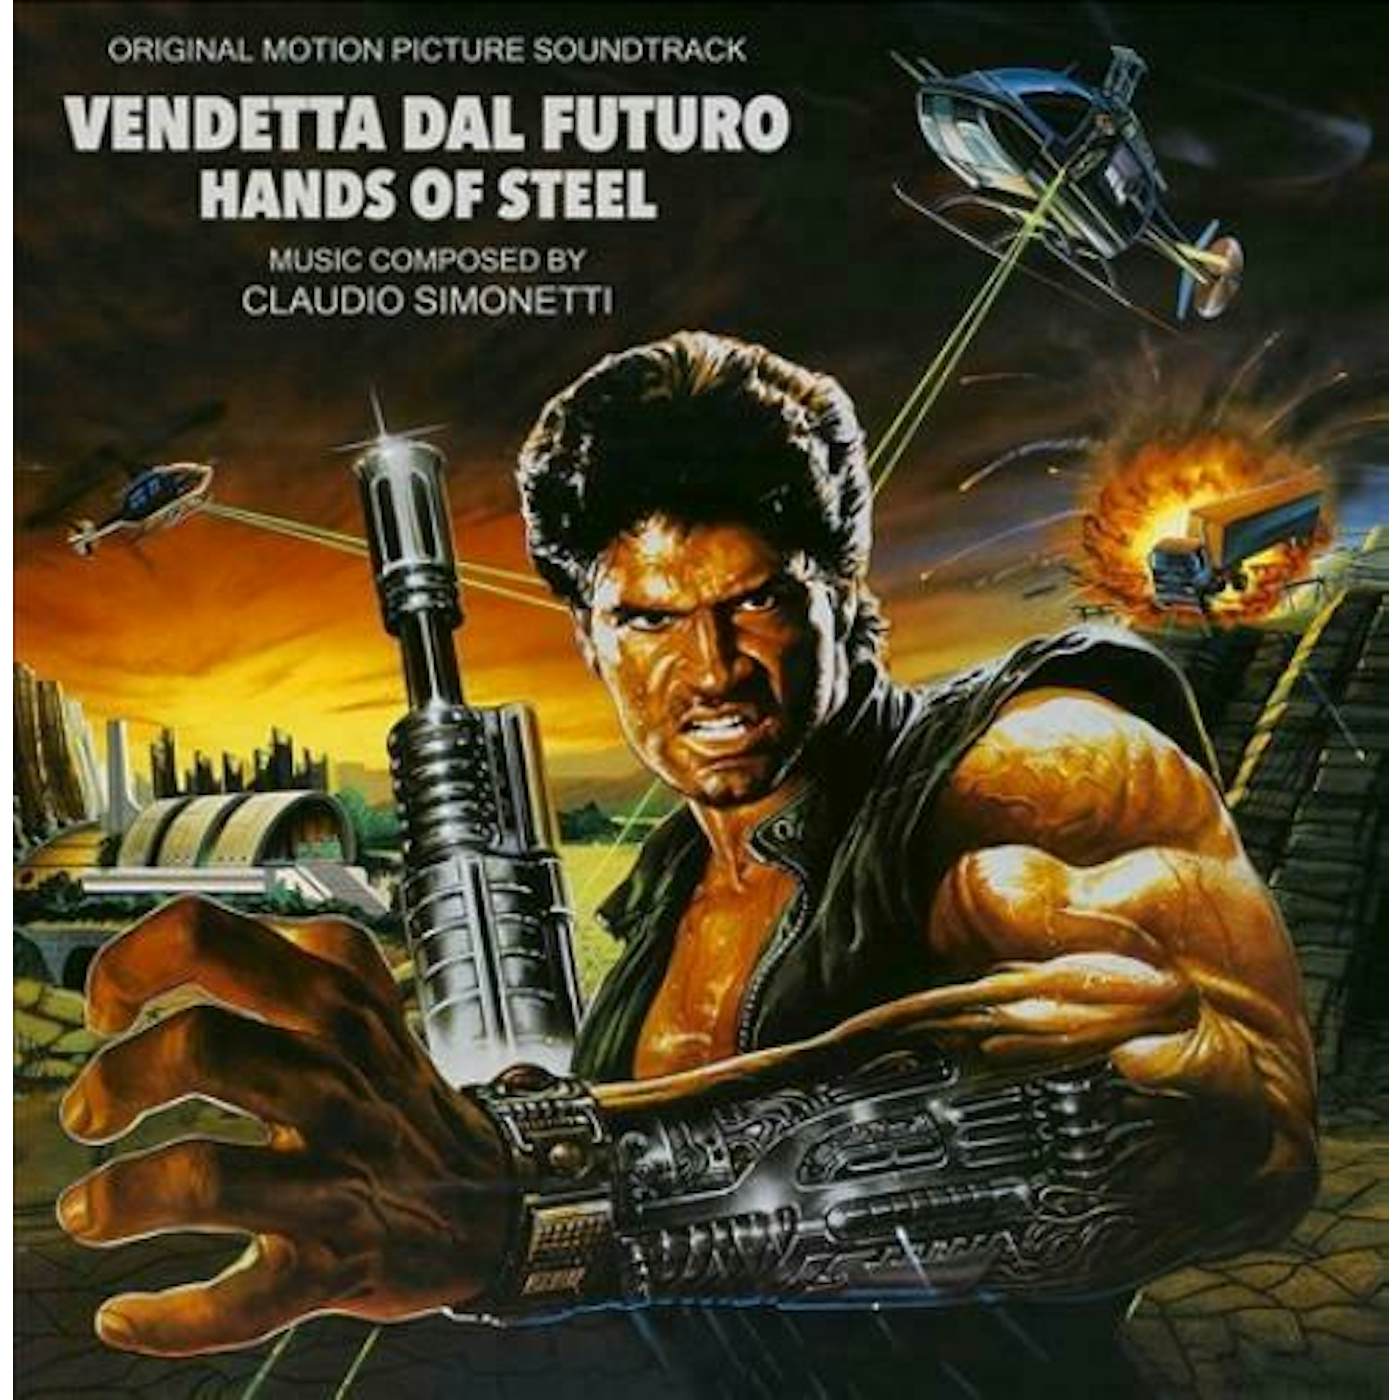 Claudio Simonetti HANDS OF STEEL (VENDETTA DAL FUTURO) / Original Soundtrack Vinyl Record